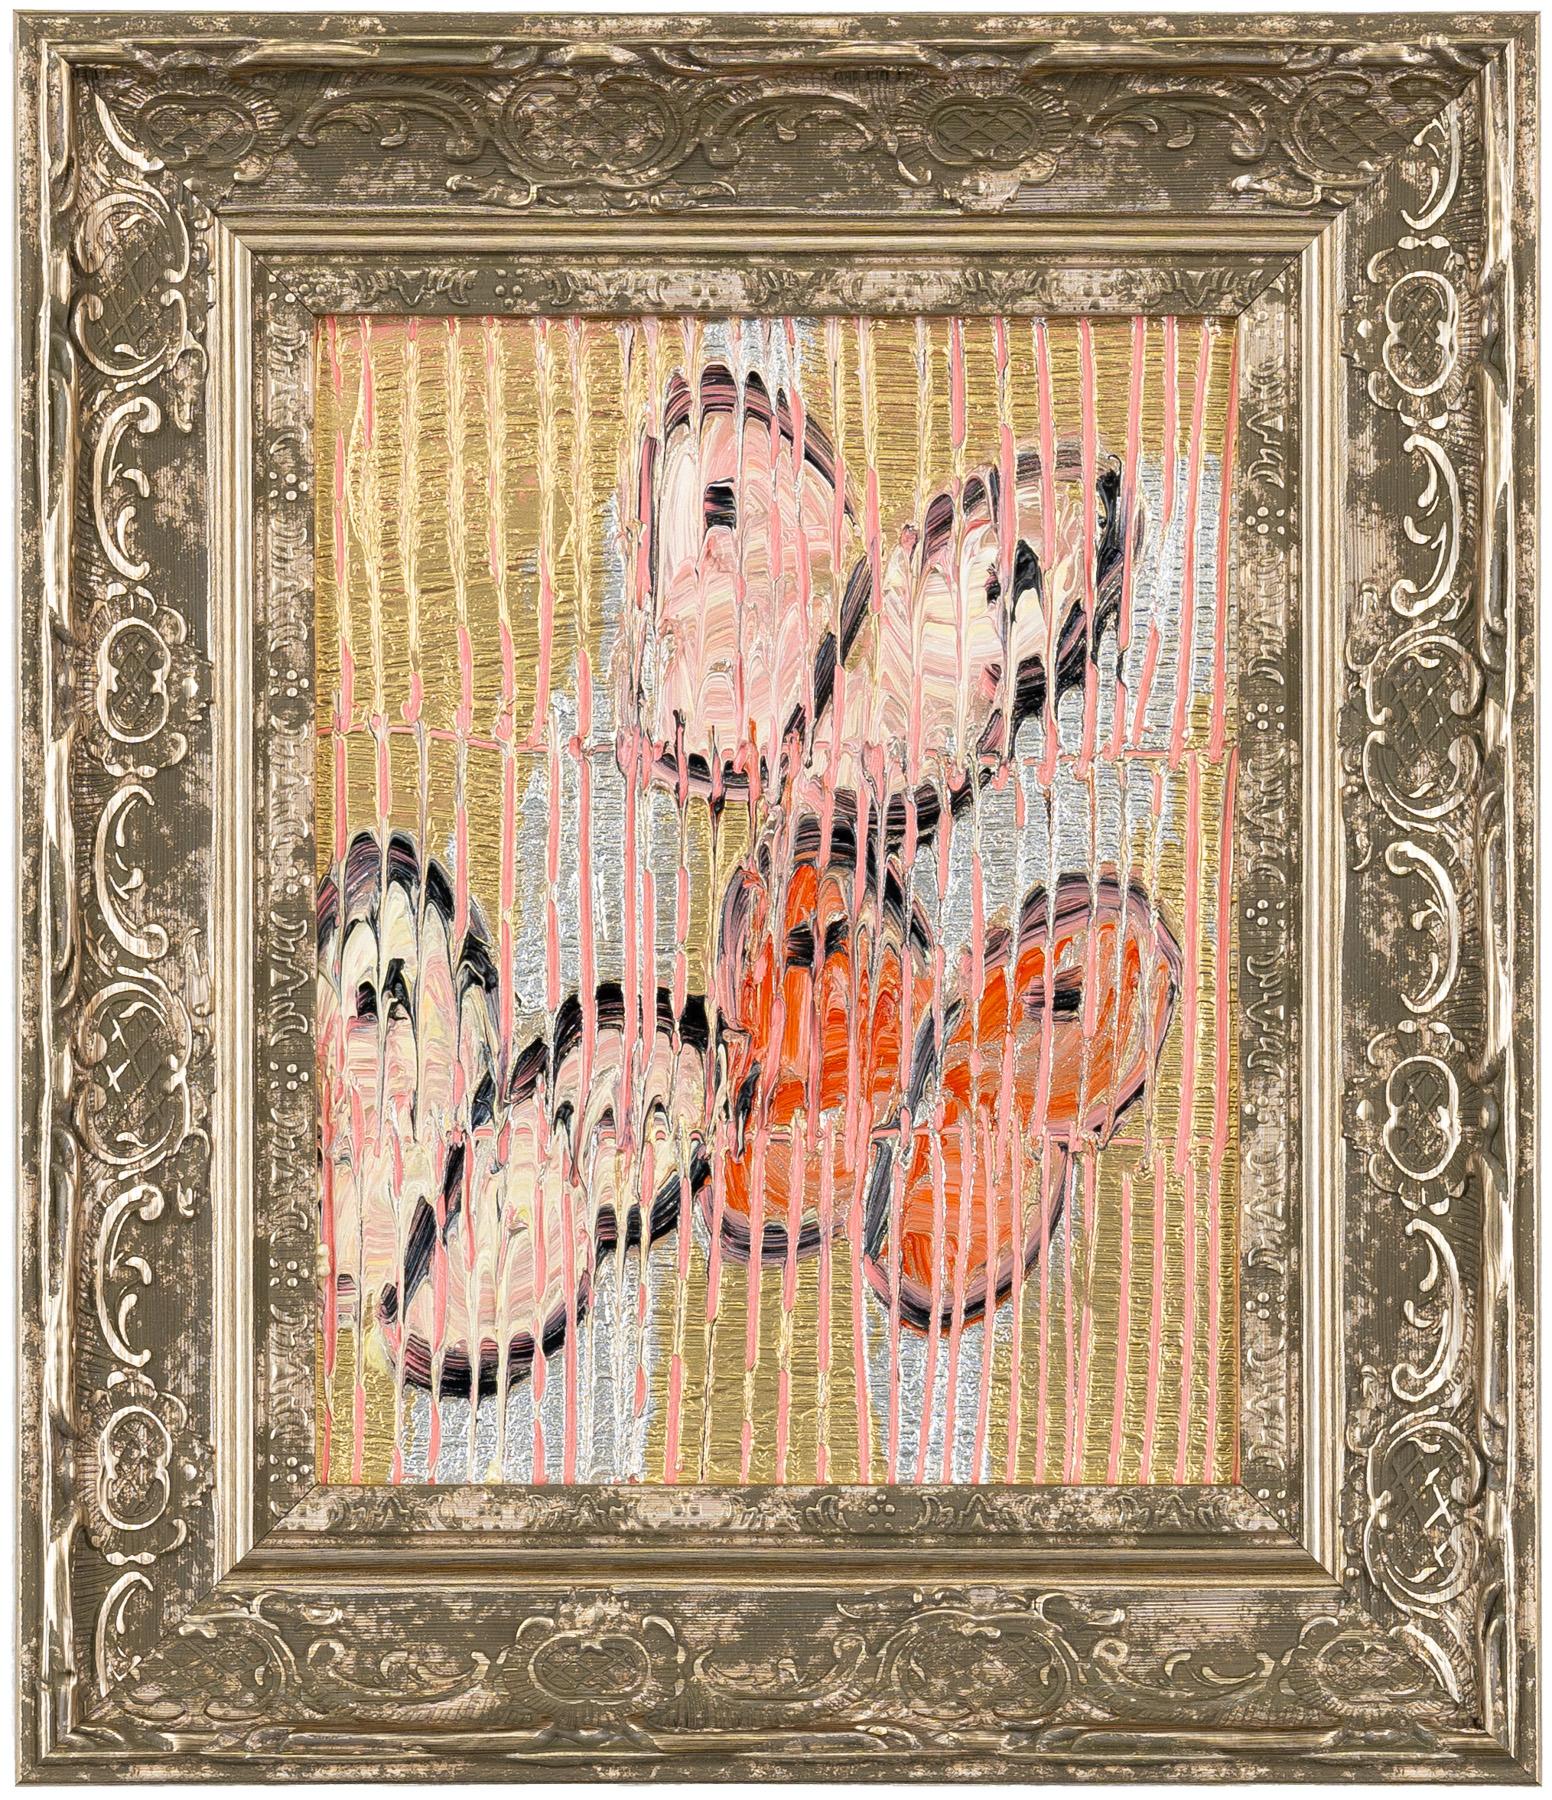 Hunt Slonem "Rosa Blick" Schmetterlinge auf Metallic
Rosa und orangefarbene Schmetterlinge auf einem metallischen, gold- und silberfarbenen, geätzten Hintergrund in einem Vintage-Rahmen.

Ungerahmt: 10 x 8 Zoll
Gerahmt: 14,5 x 12,5 Zoll
*Gemälde ist